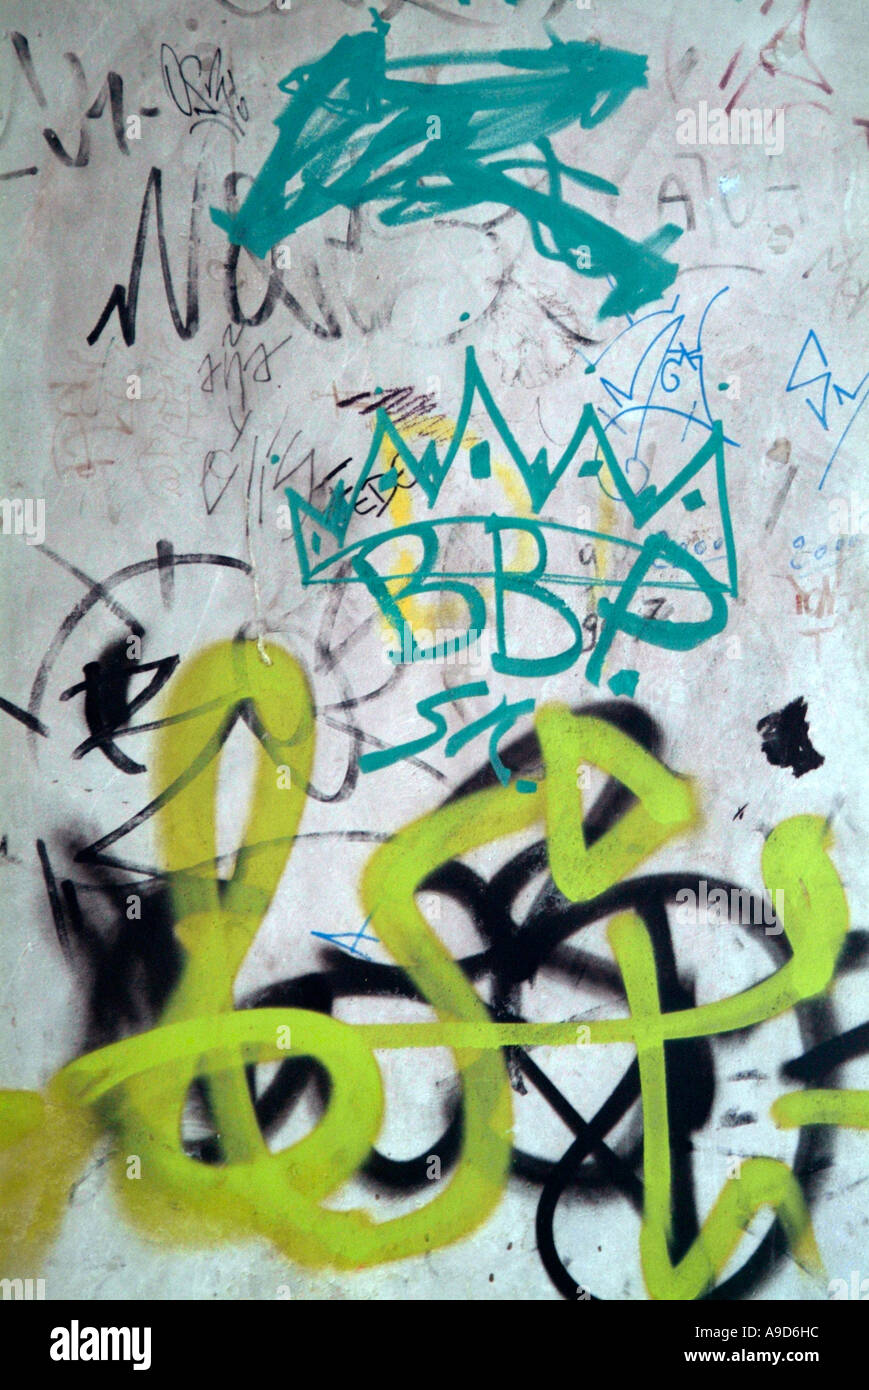 Le Graffiti, peinture, pulvérisation, spraypaint, marqueur, stylo, tag, marquage, pénale, dommages, Scribble, antisociale, comportement, Banque D'Images